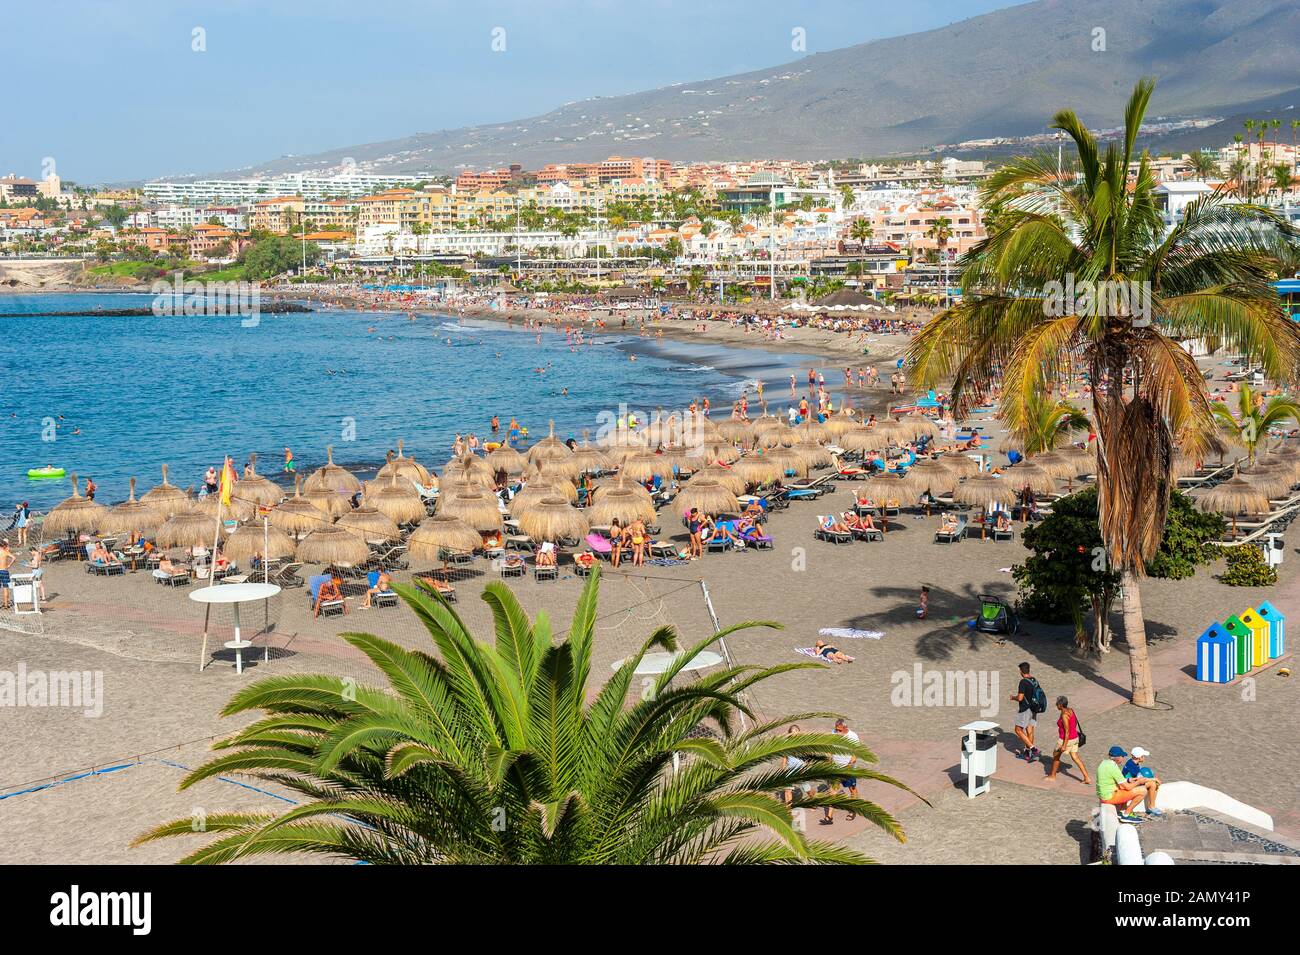 Île des Canaries TENERIFE, ESPAGNE - 26 DEC, 2019: Vue sur la plage appelée playa de torviscas. Une des plages les plus populaires pour les touristes sur Tenerife. Banque D'Images